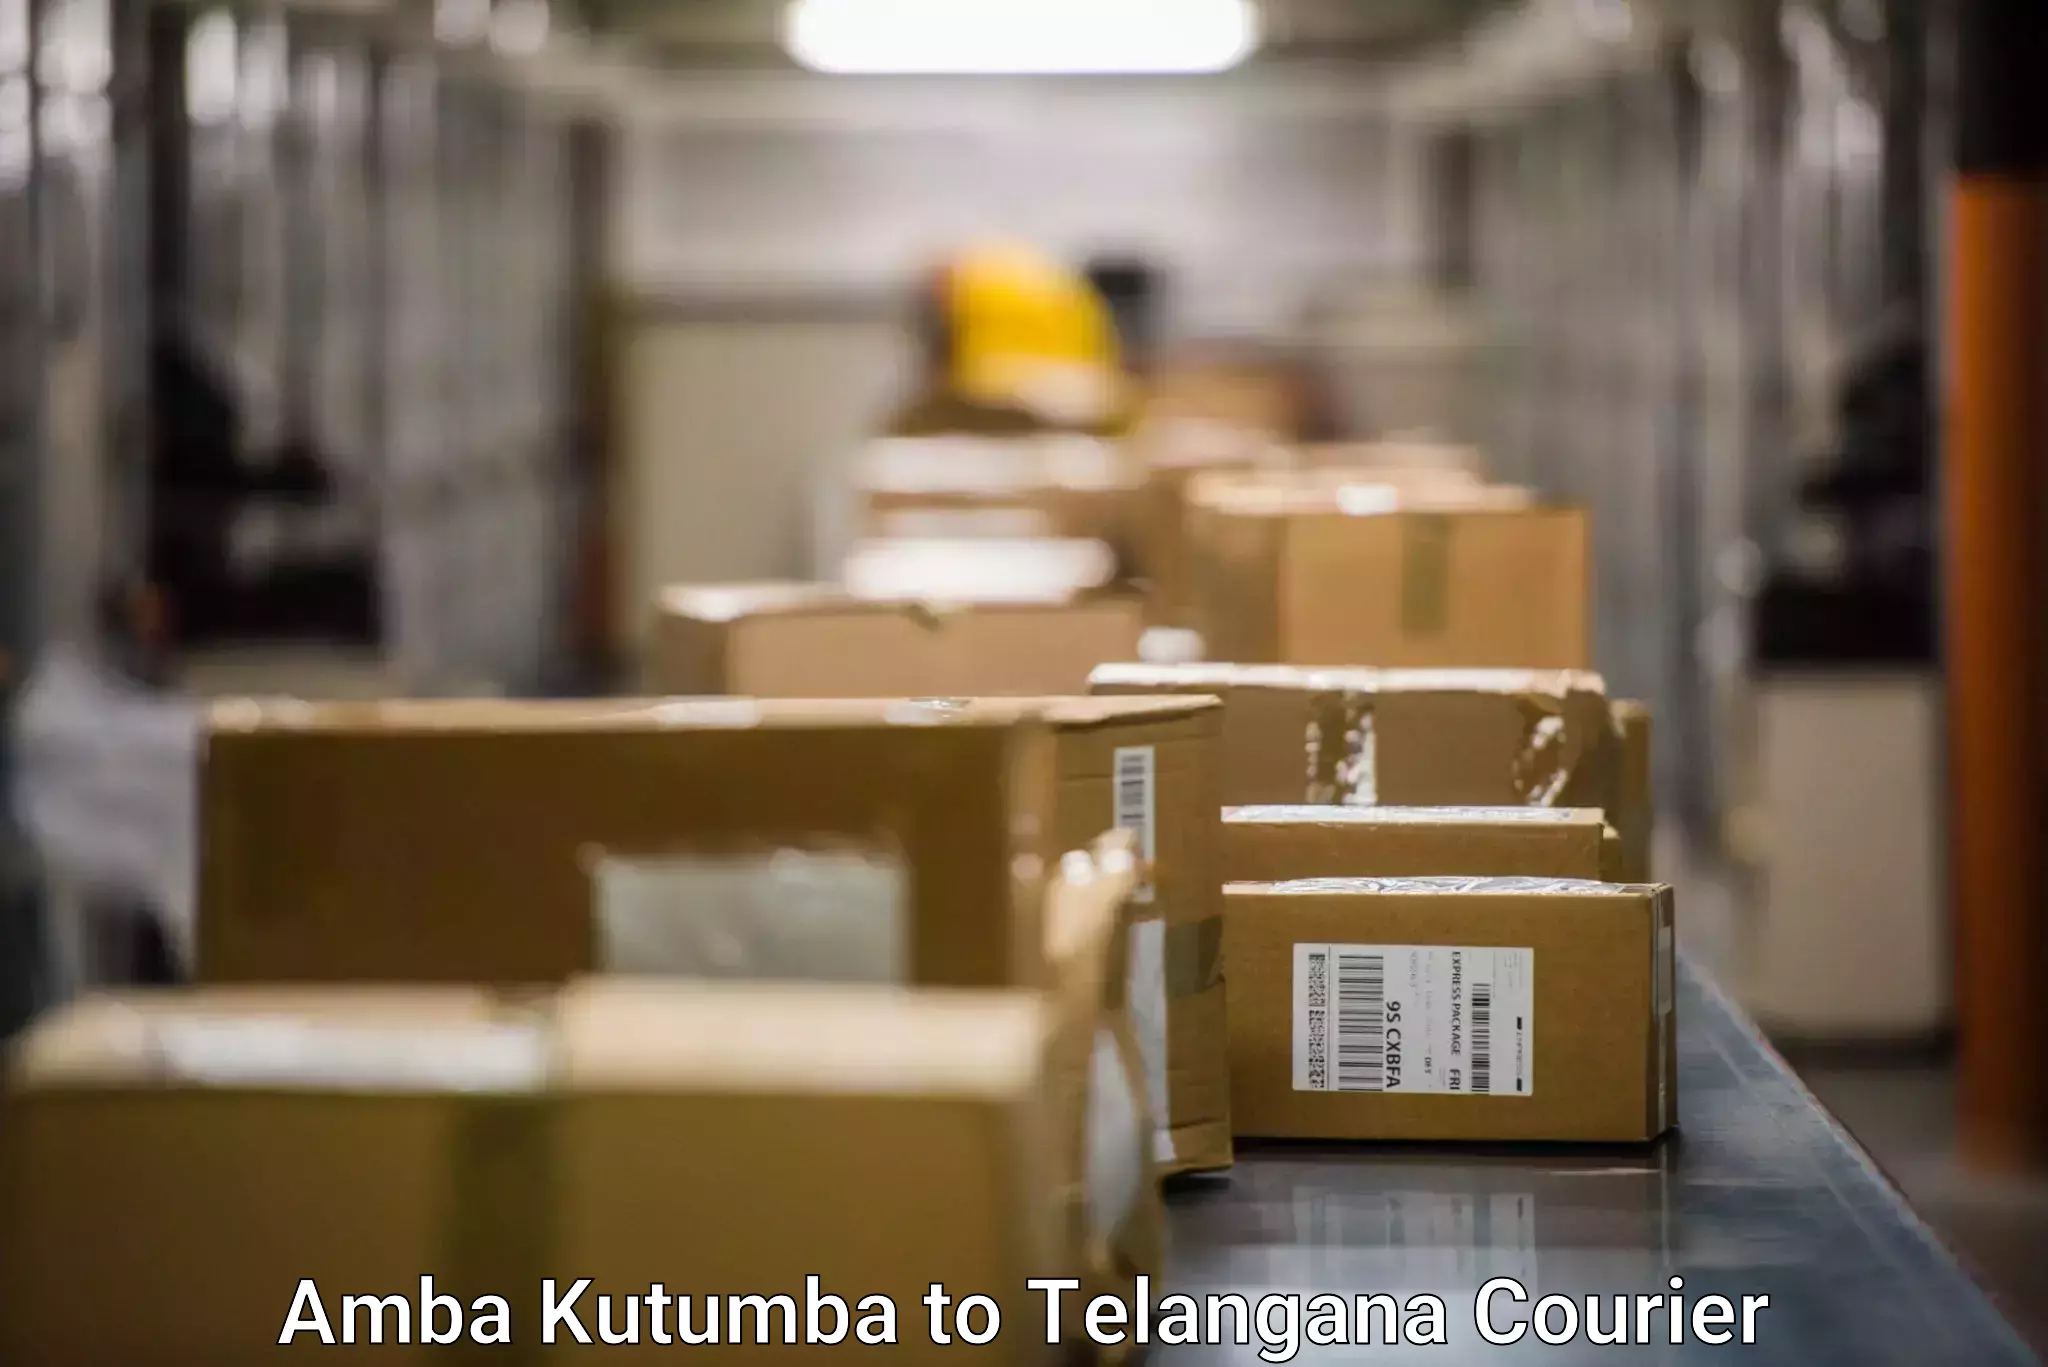 International parcel service Amba Kutumba to Jannaram